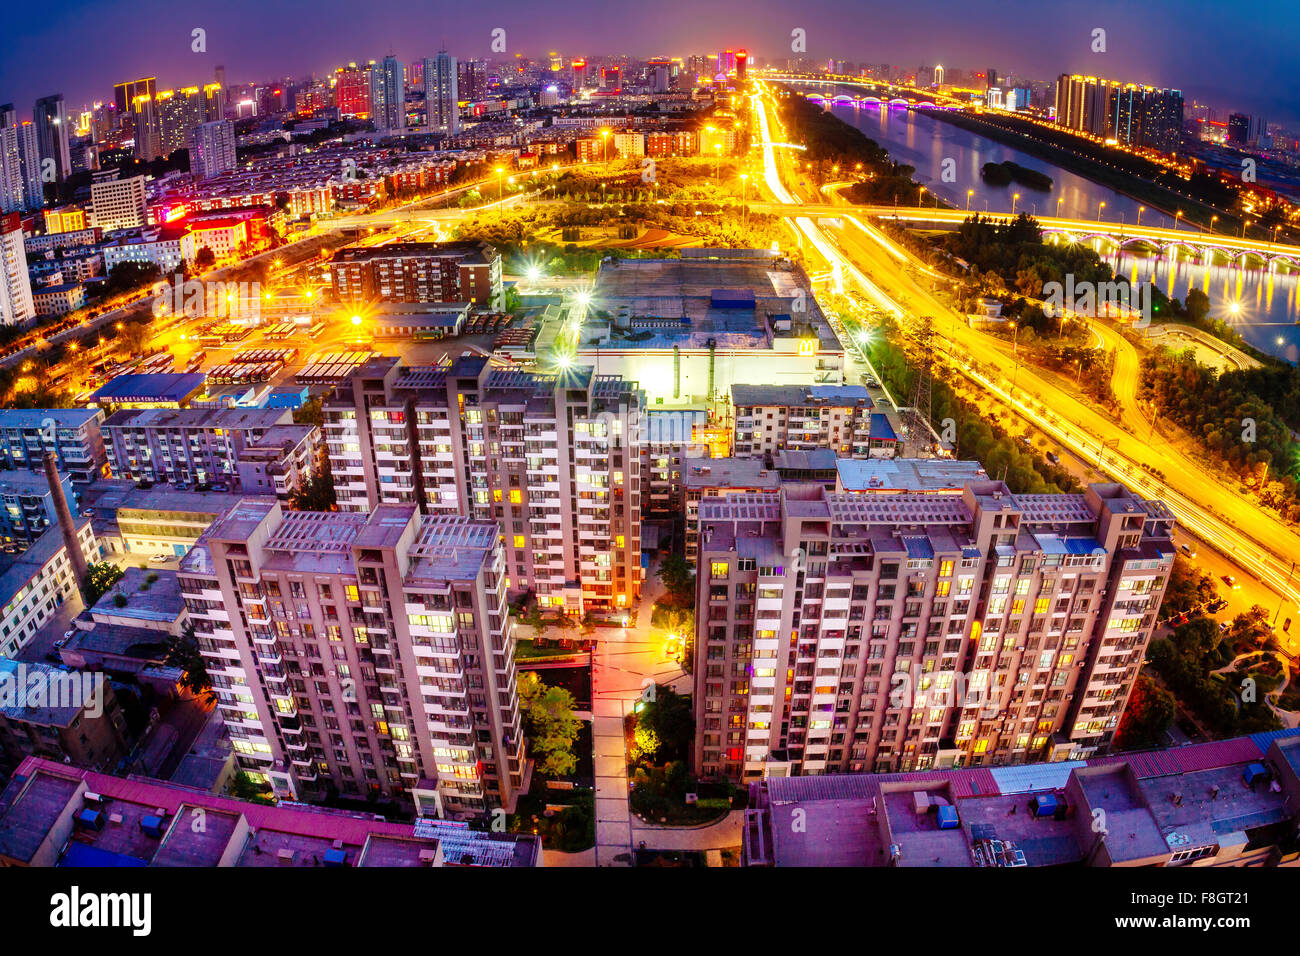 Taiyuan, Shanxi province, China - Panorama view of Taiyuan city in fisheye view. Stock Photo